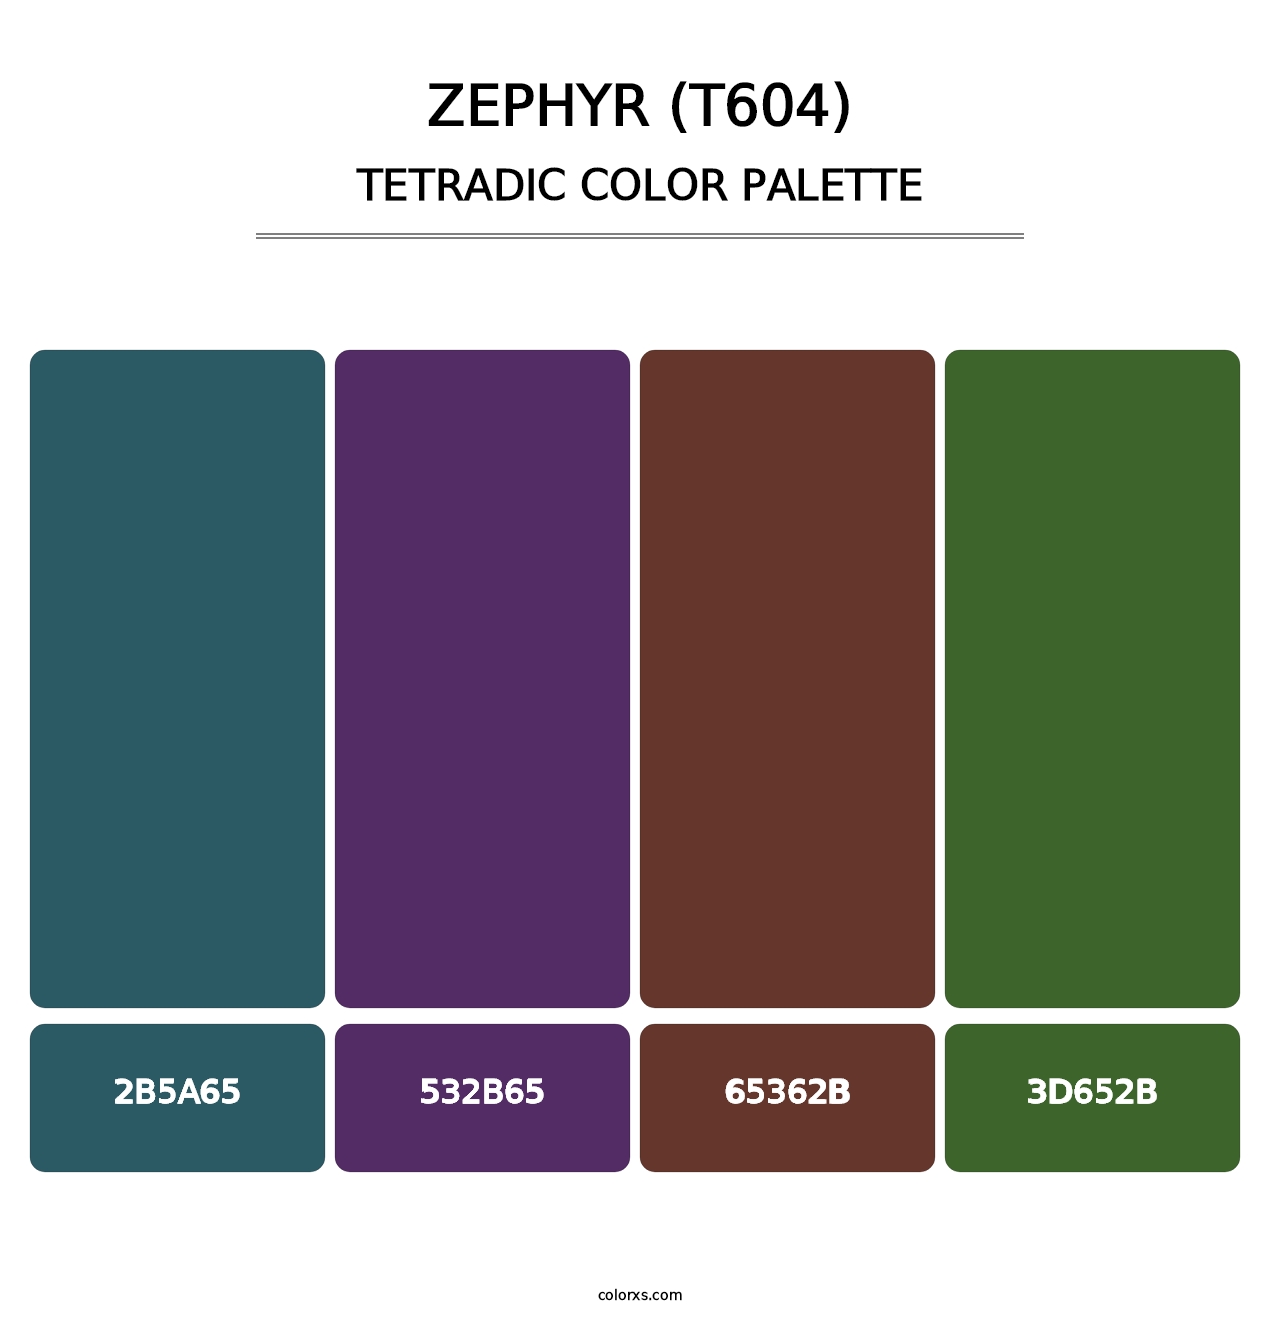 Zephyr (T604) - Tetradic Color Palette